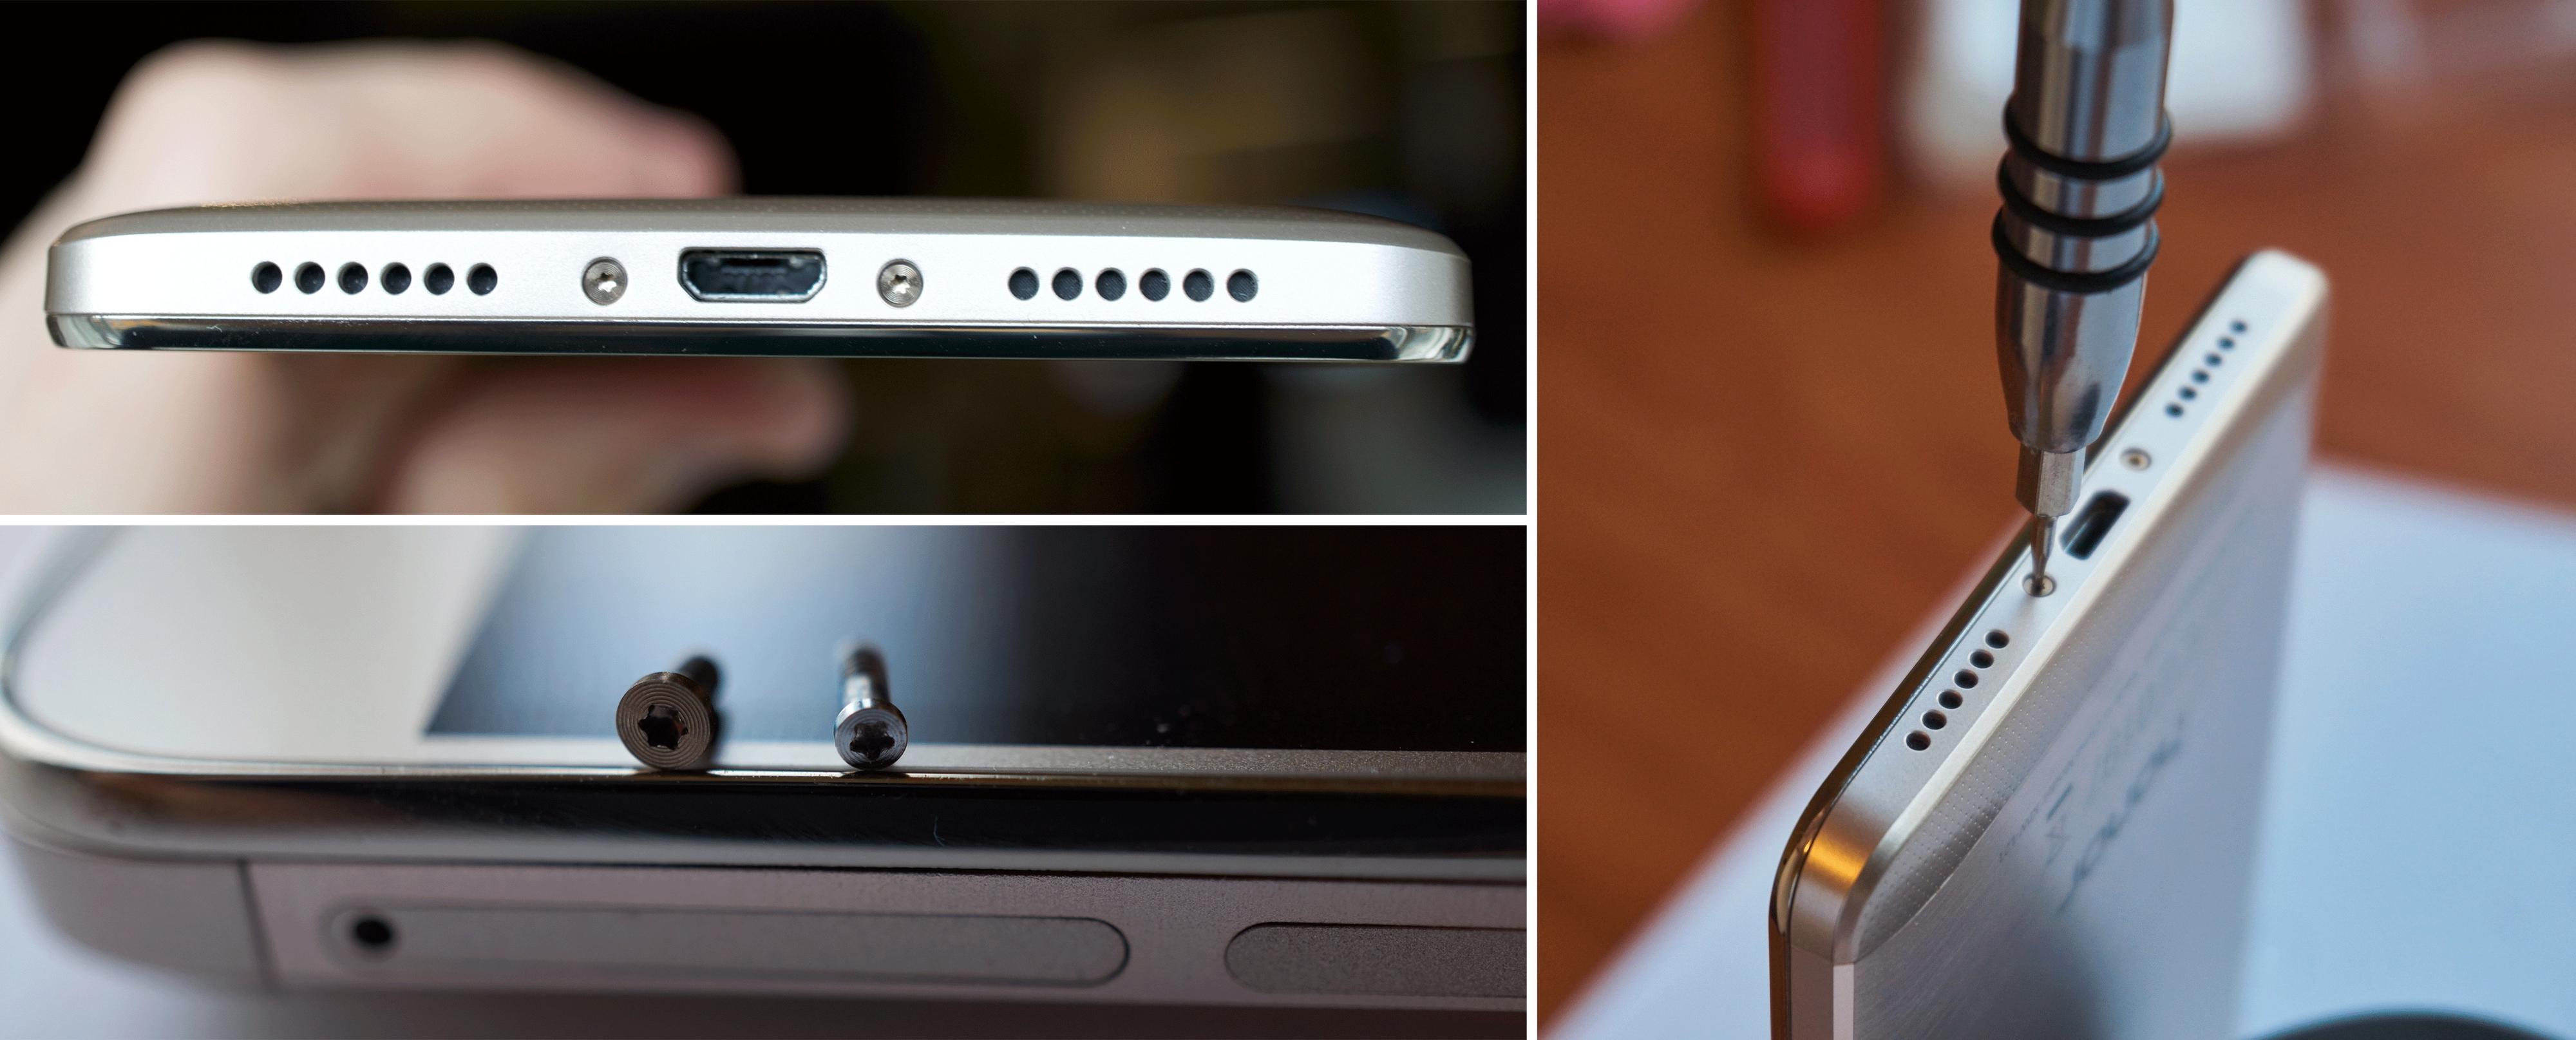 Det hjalp ikke nevneverdig å skru ut disse. I bildet nede til venstre er skruen til Huawei og skruen til Apple (høyre) sammenlignet.